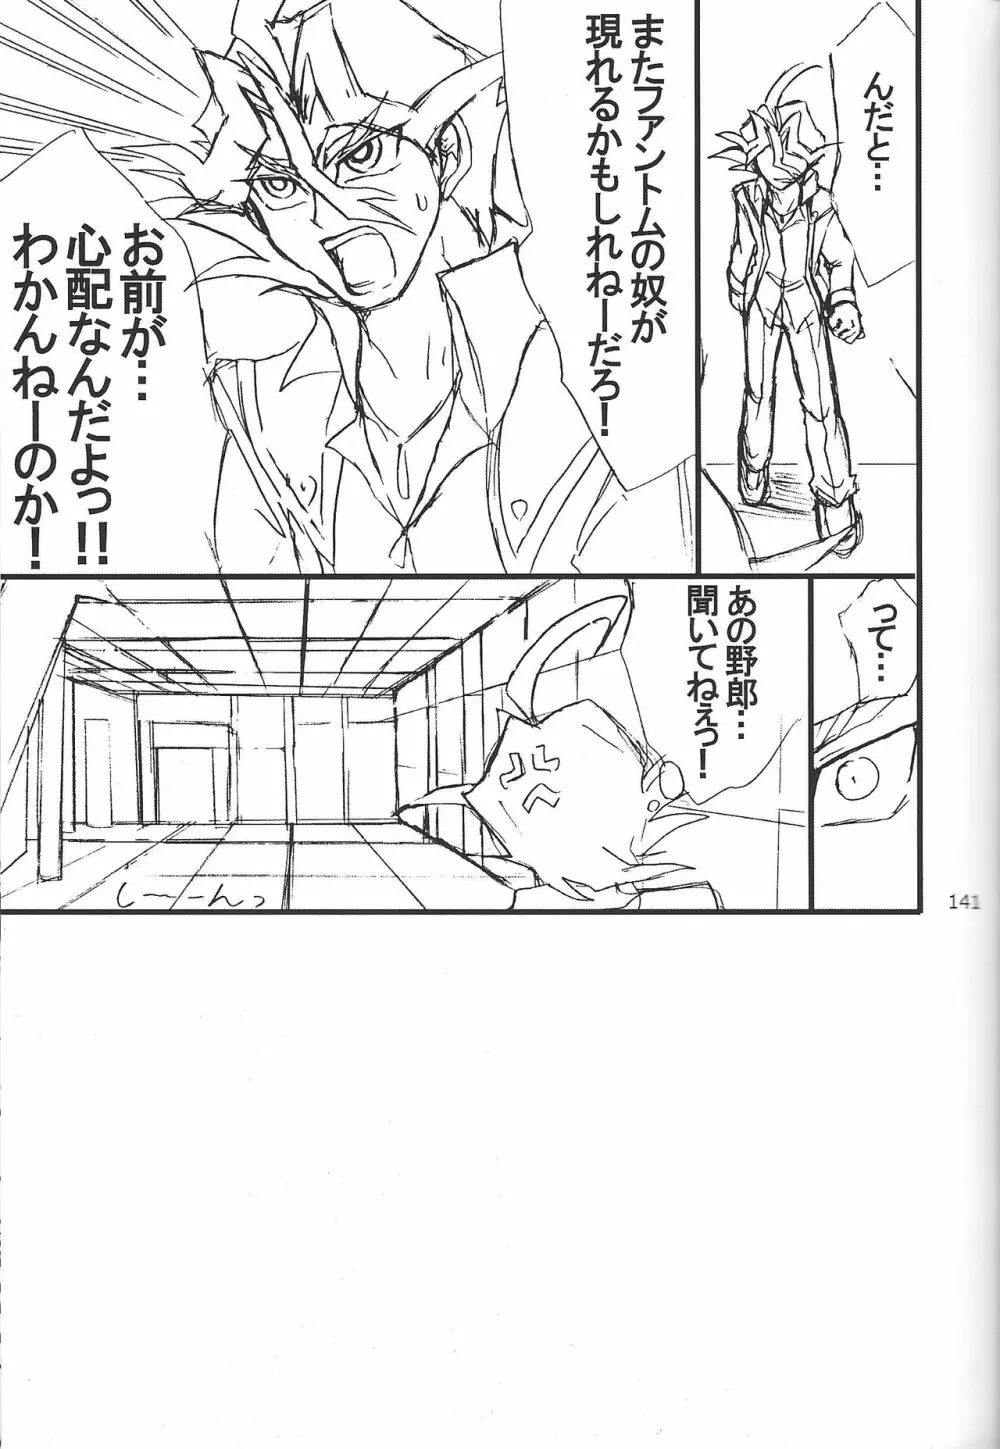 Danshi hanran gunbyō no nichijō REMIX 140ページ